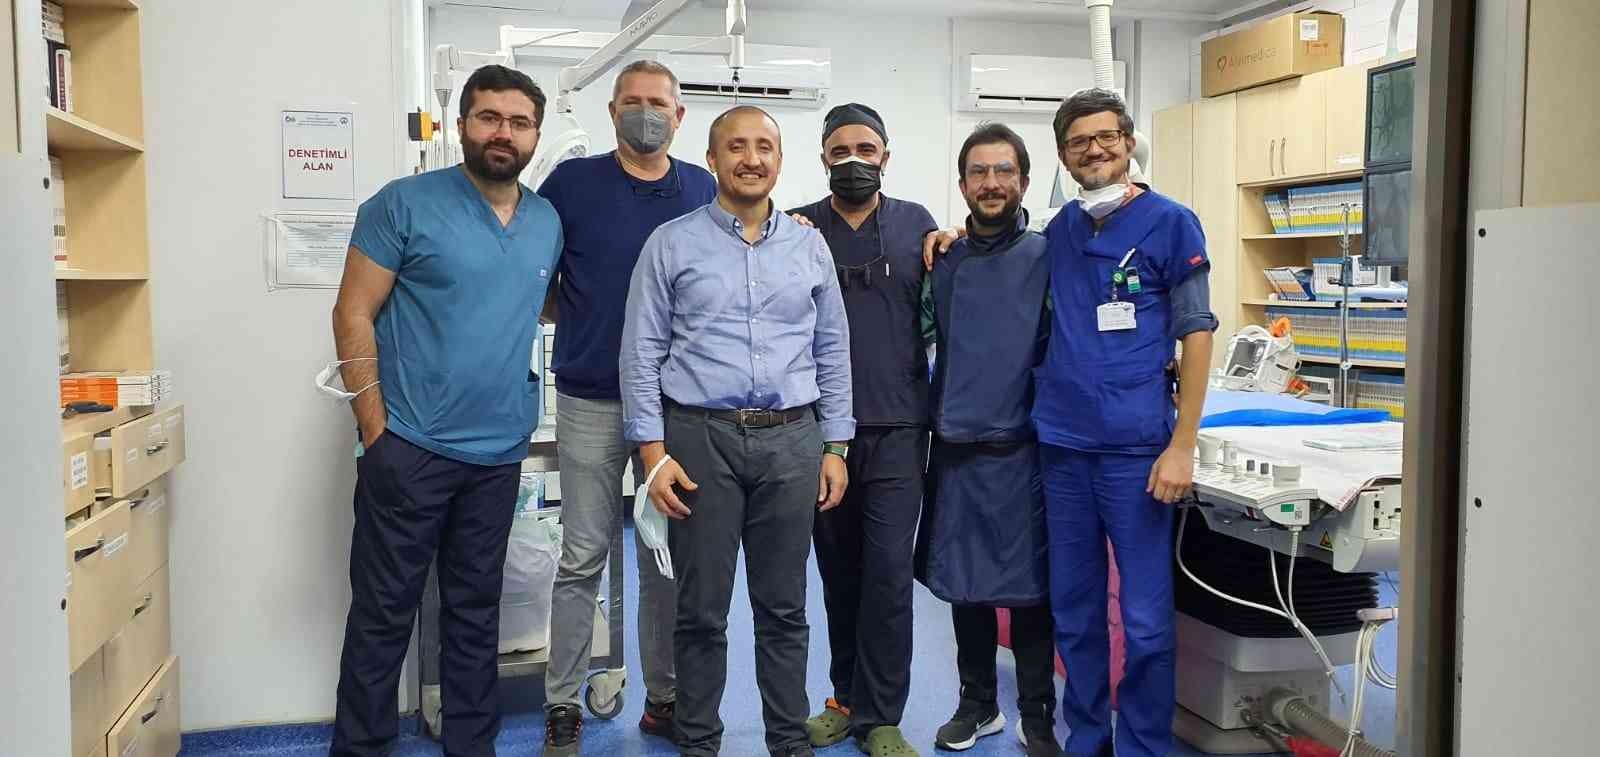 Kütahya’da 88 yaşındaki hastanın aort kapağı ameliyatsız değiştirildi #kutahya